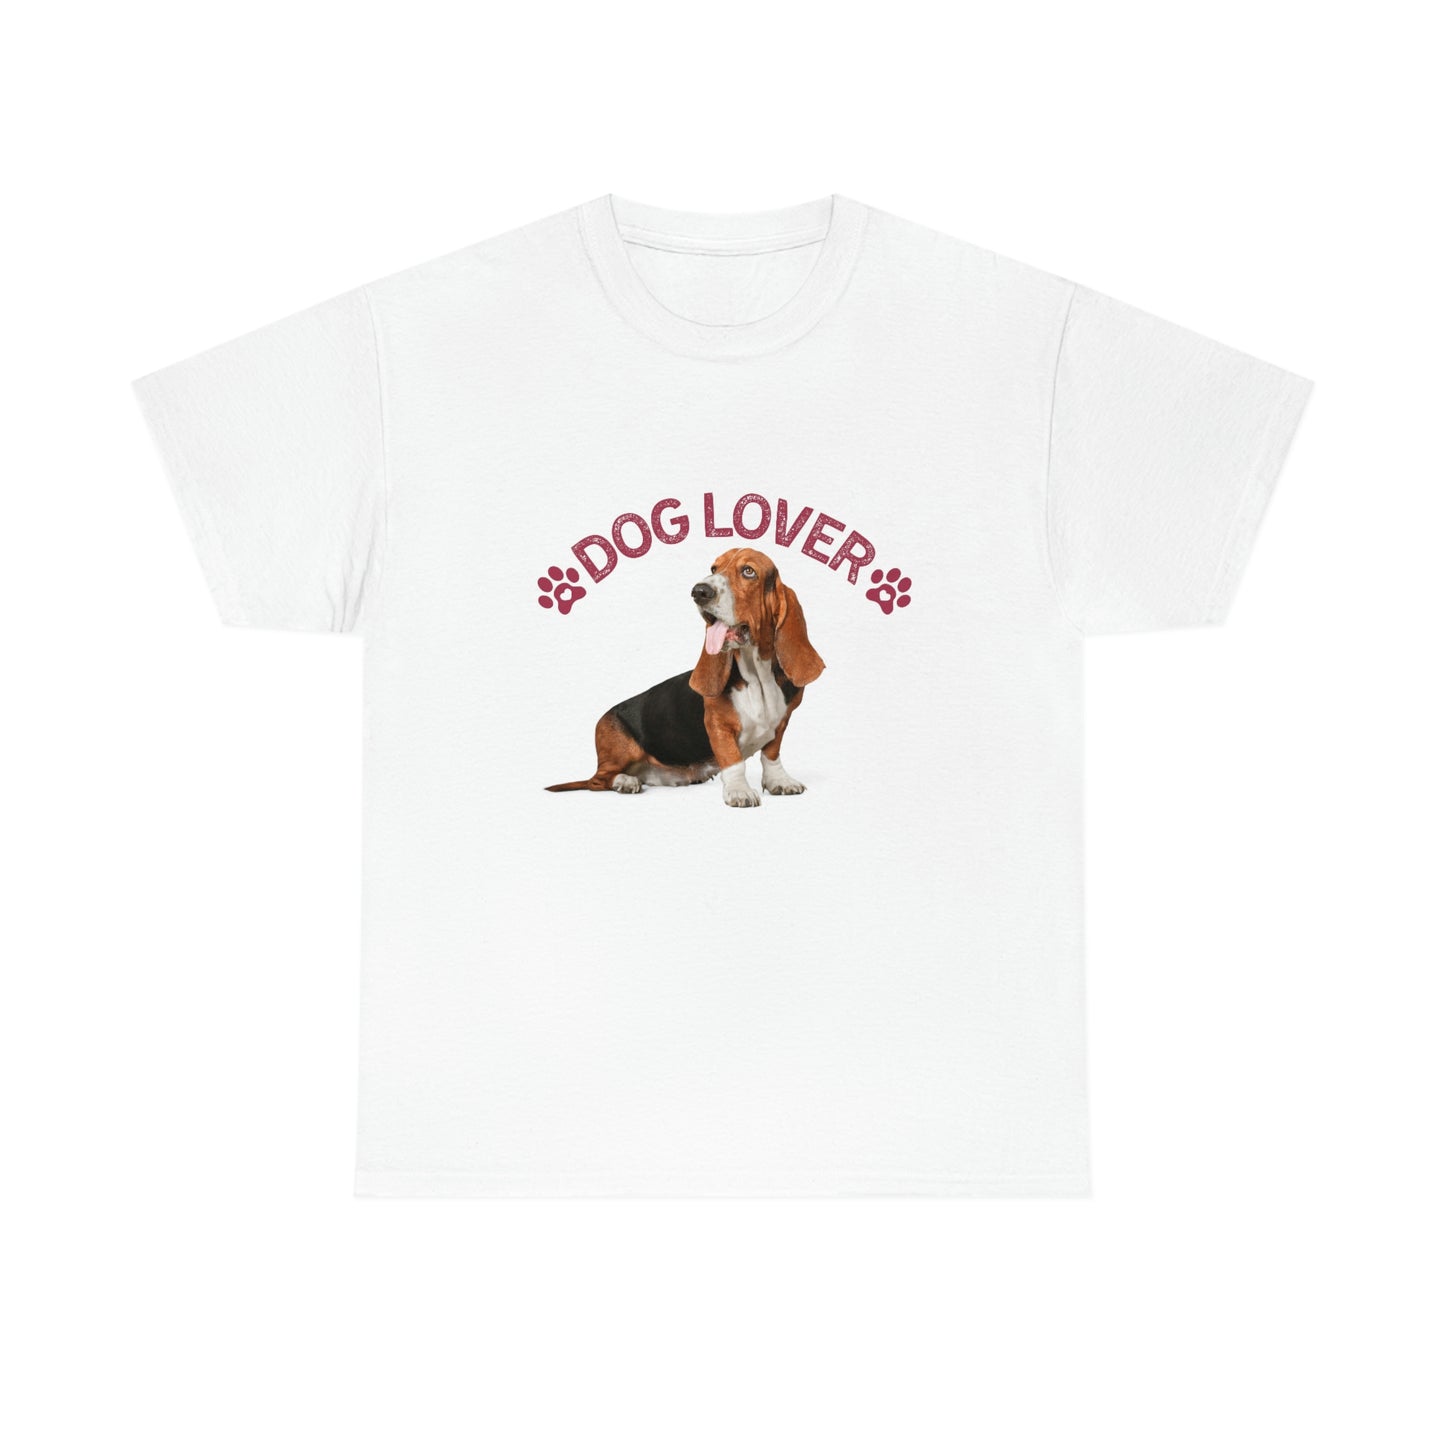 Basset Hound Dog  "Dog Lover" design Graphic tee shirt